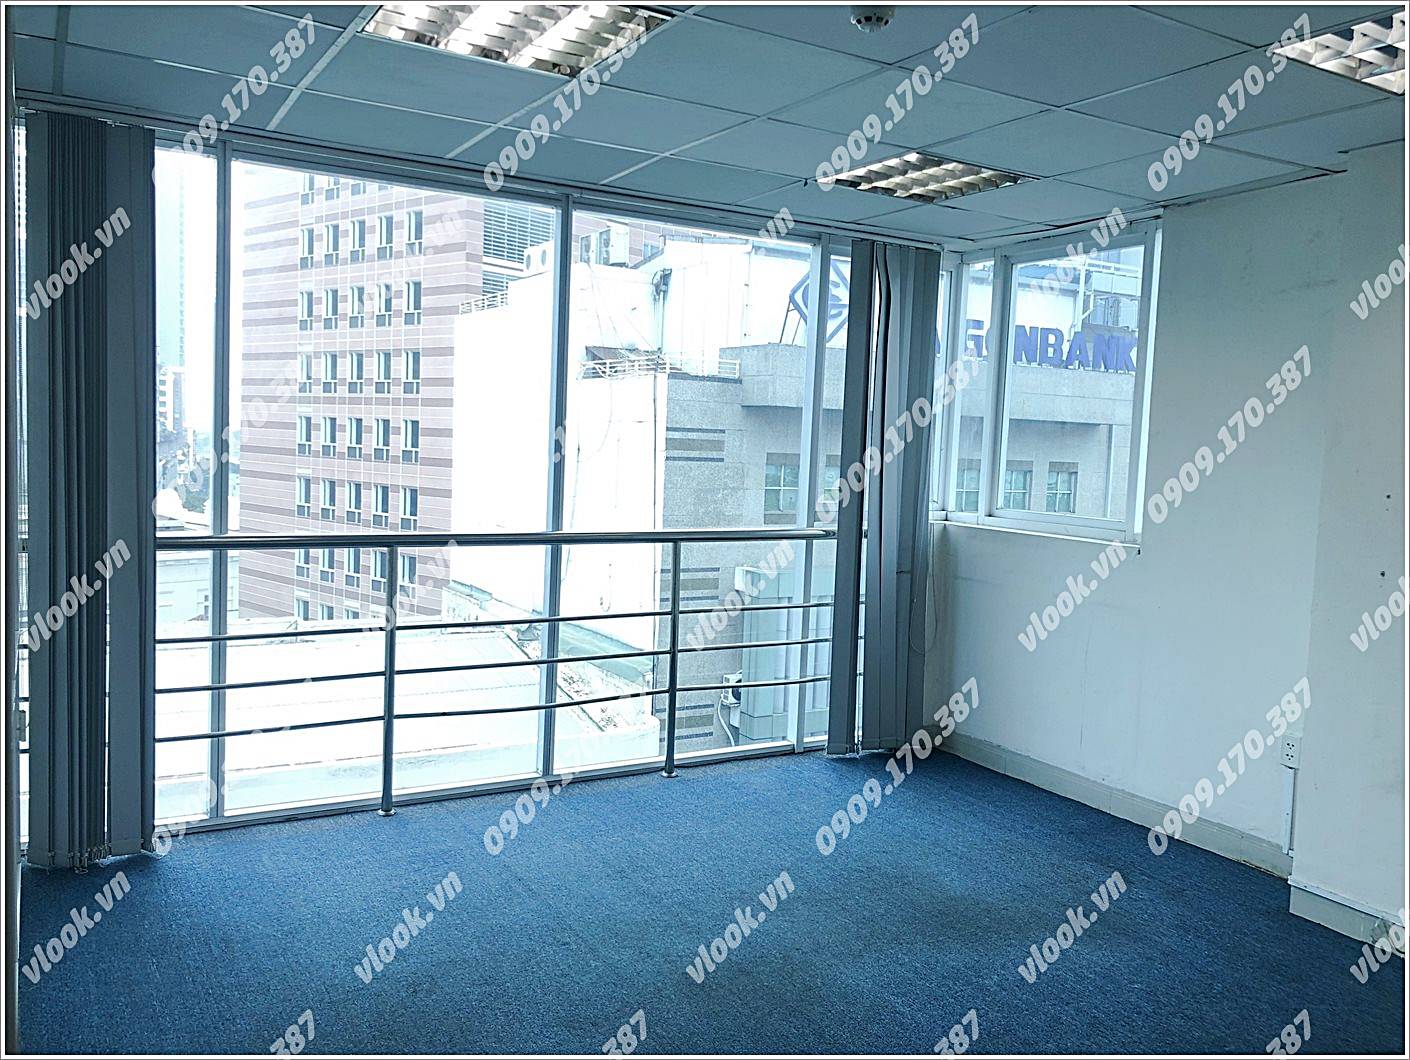 Cao ốc cho thuê văn phòng tòa nhà P&T Office Building, Phó Đức Chính, Quận 1, TPHCM - vlook.vn